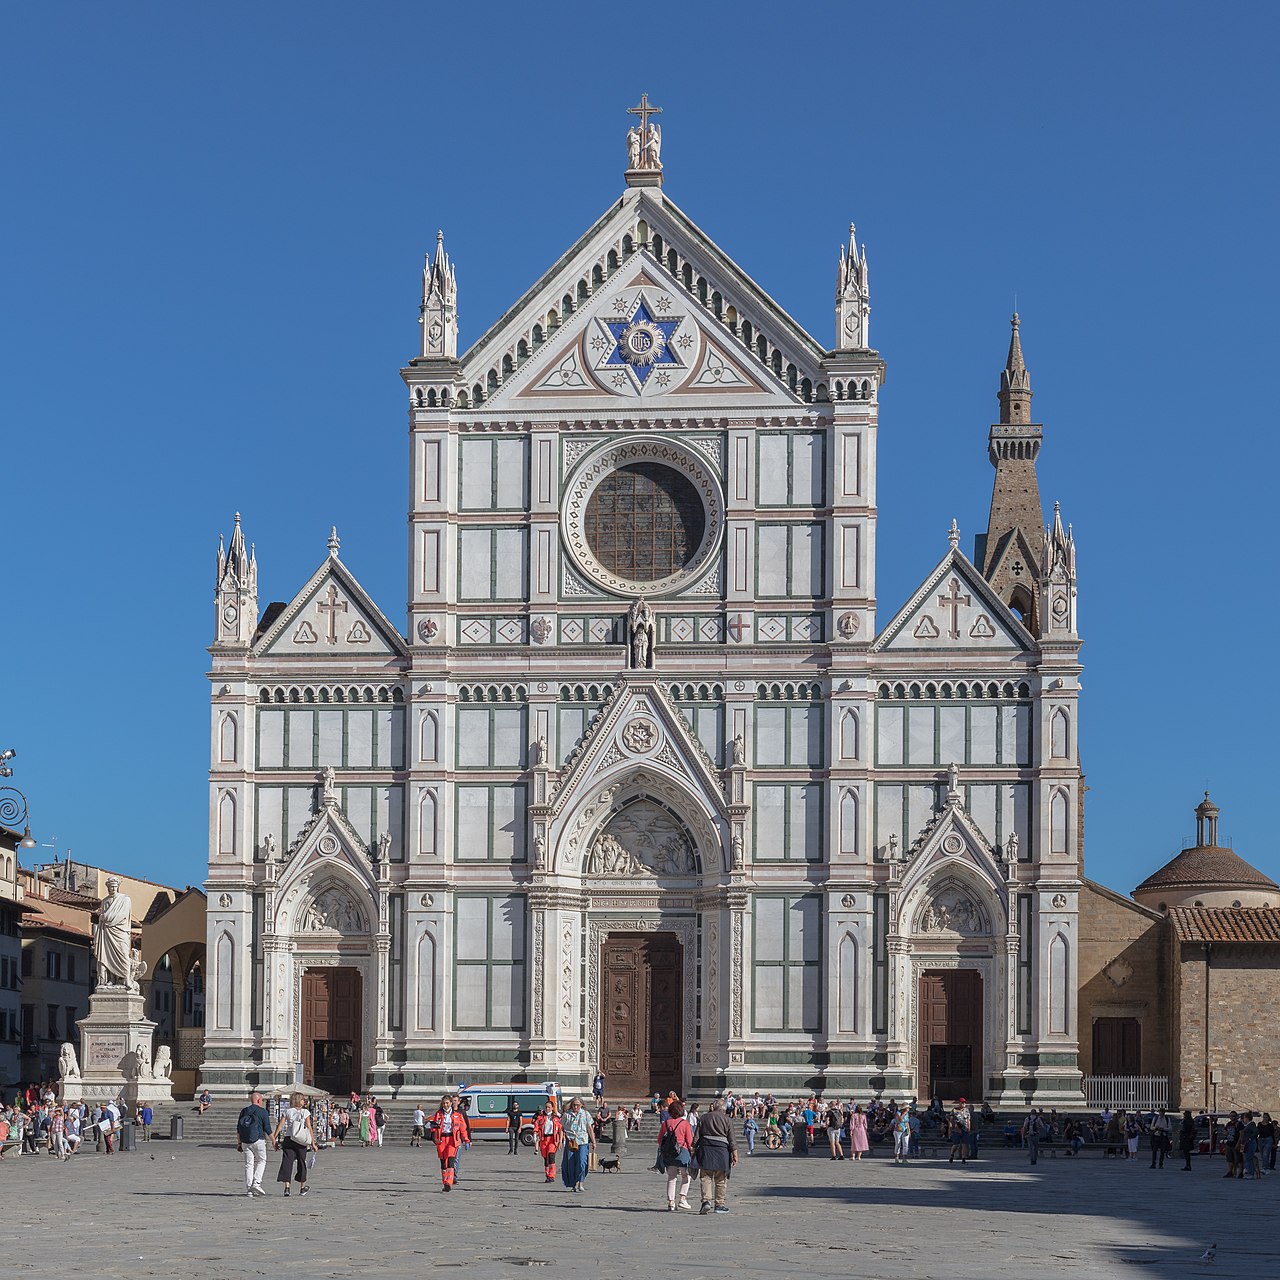 Das Stendhal Syndrom – Risiken und Nebenwirkungen beim Kunstgenuss
Santa Croce, Eingangsfassade, Florenz
